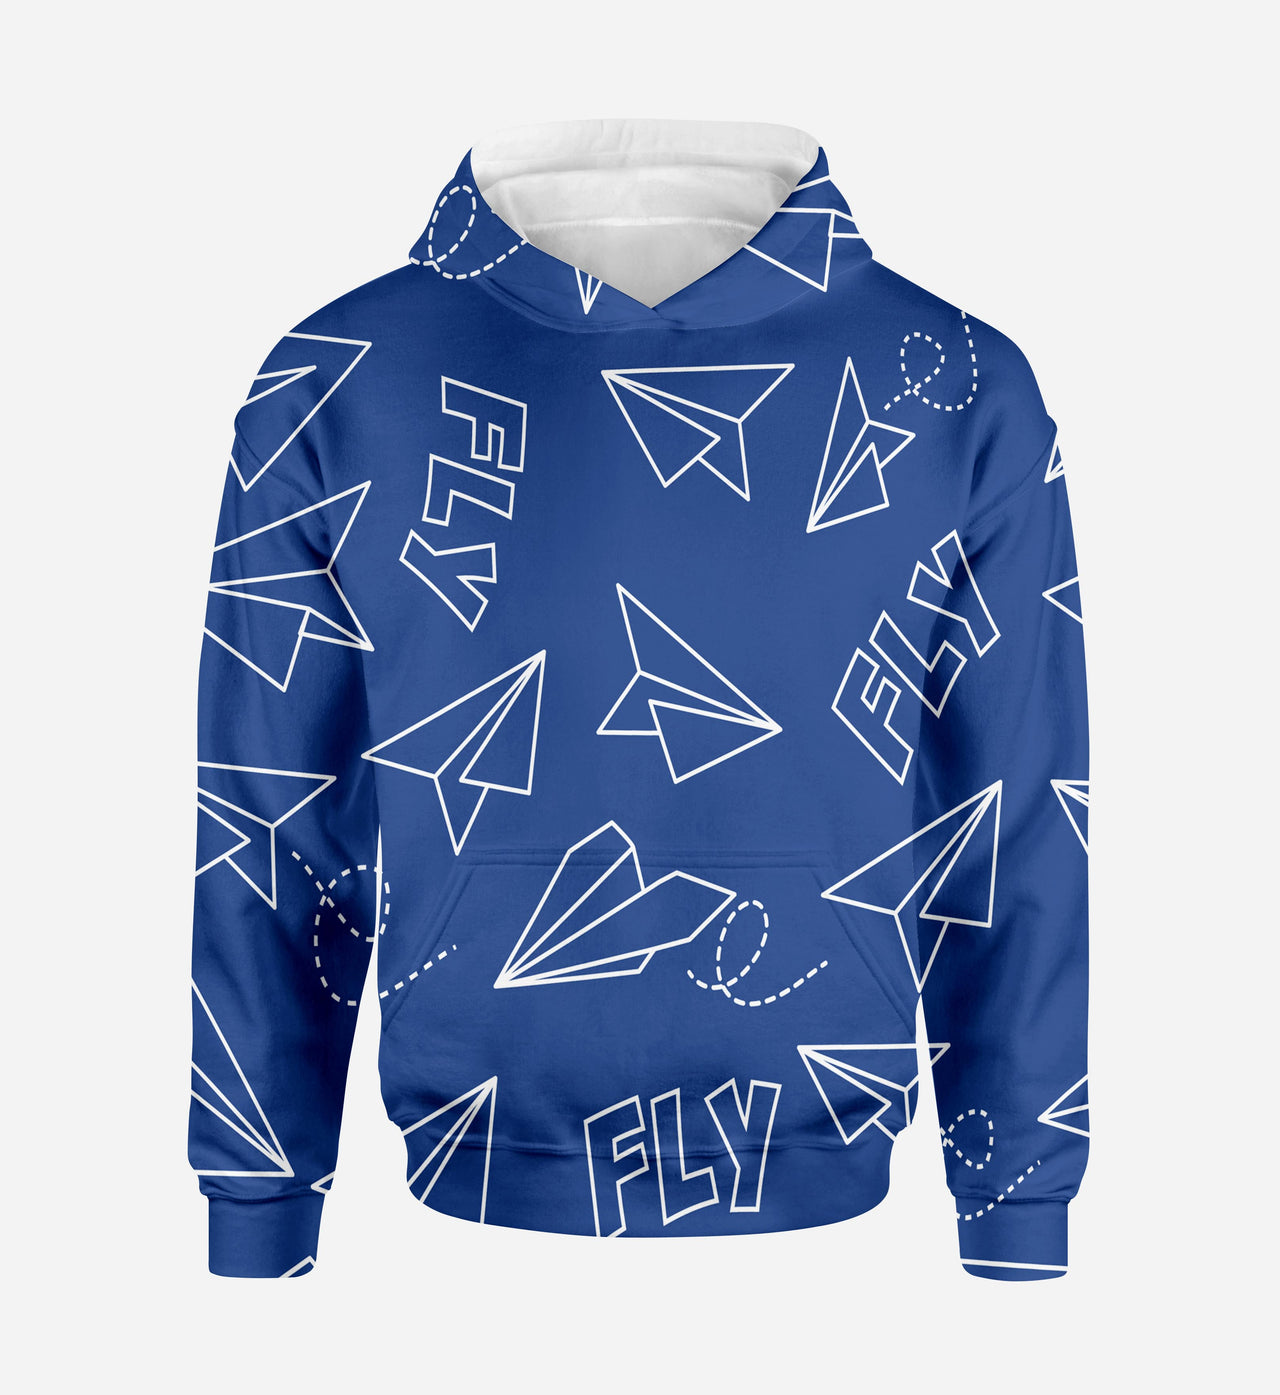 Paper Airplane & Fly (Blue) Printed 3D Hoodies